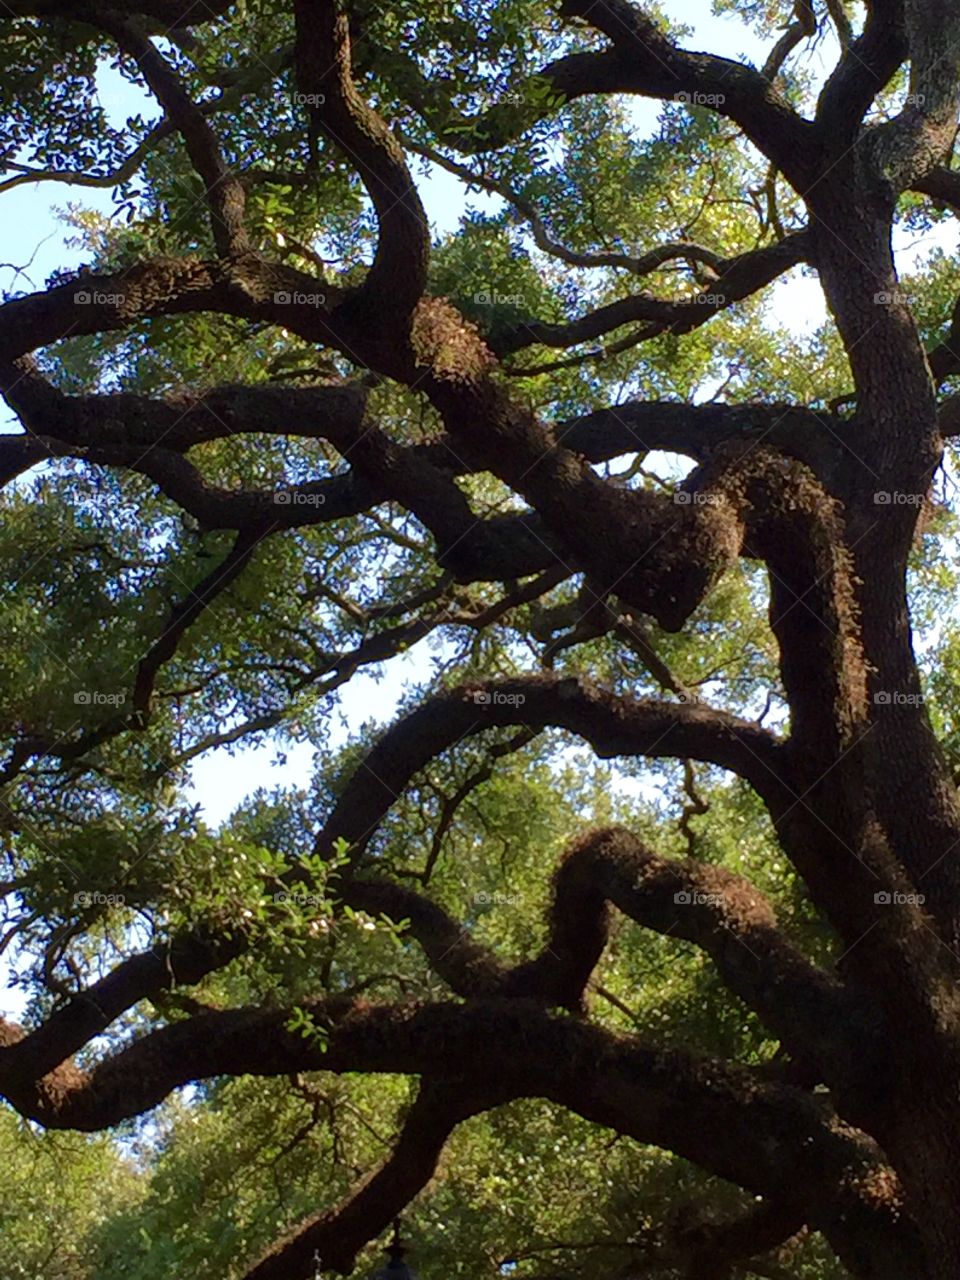 Savannah trees